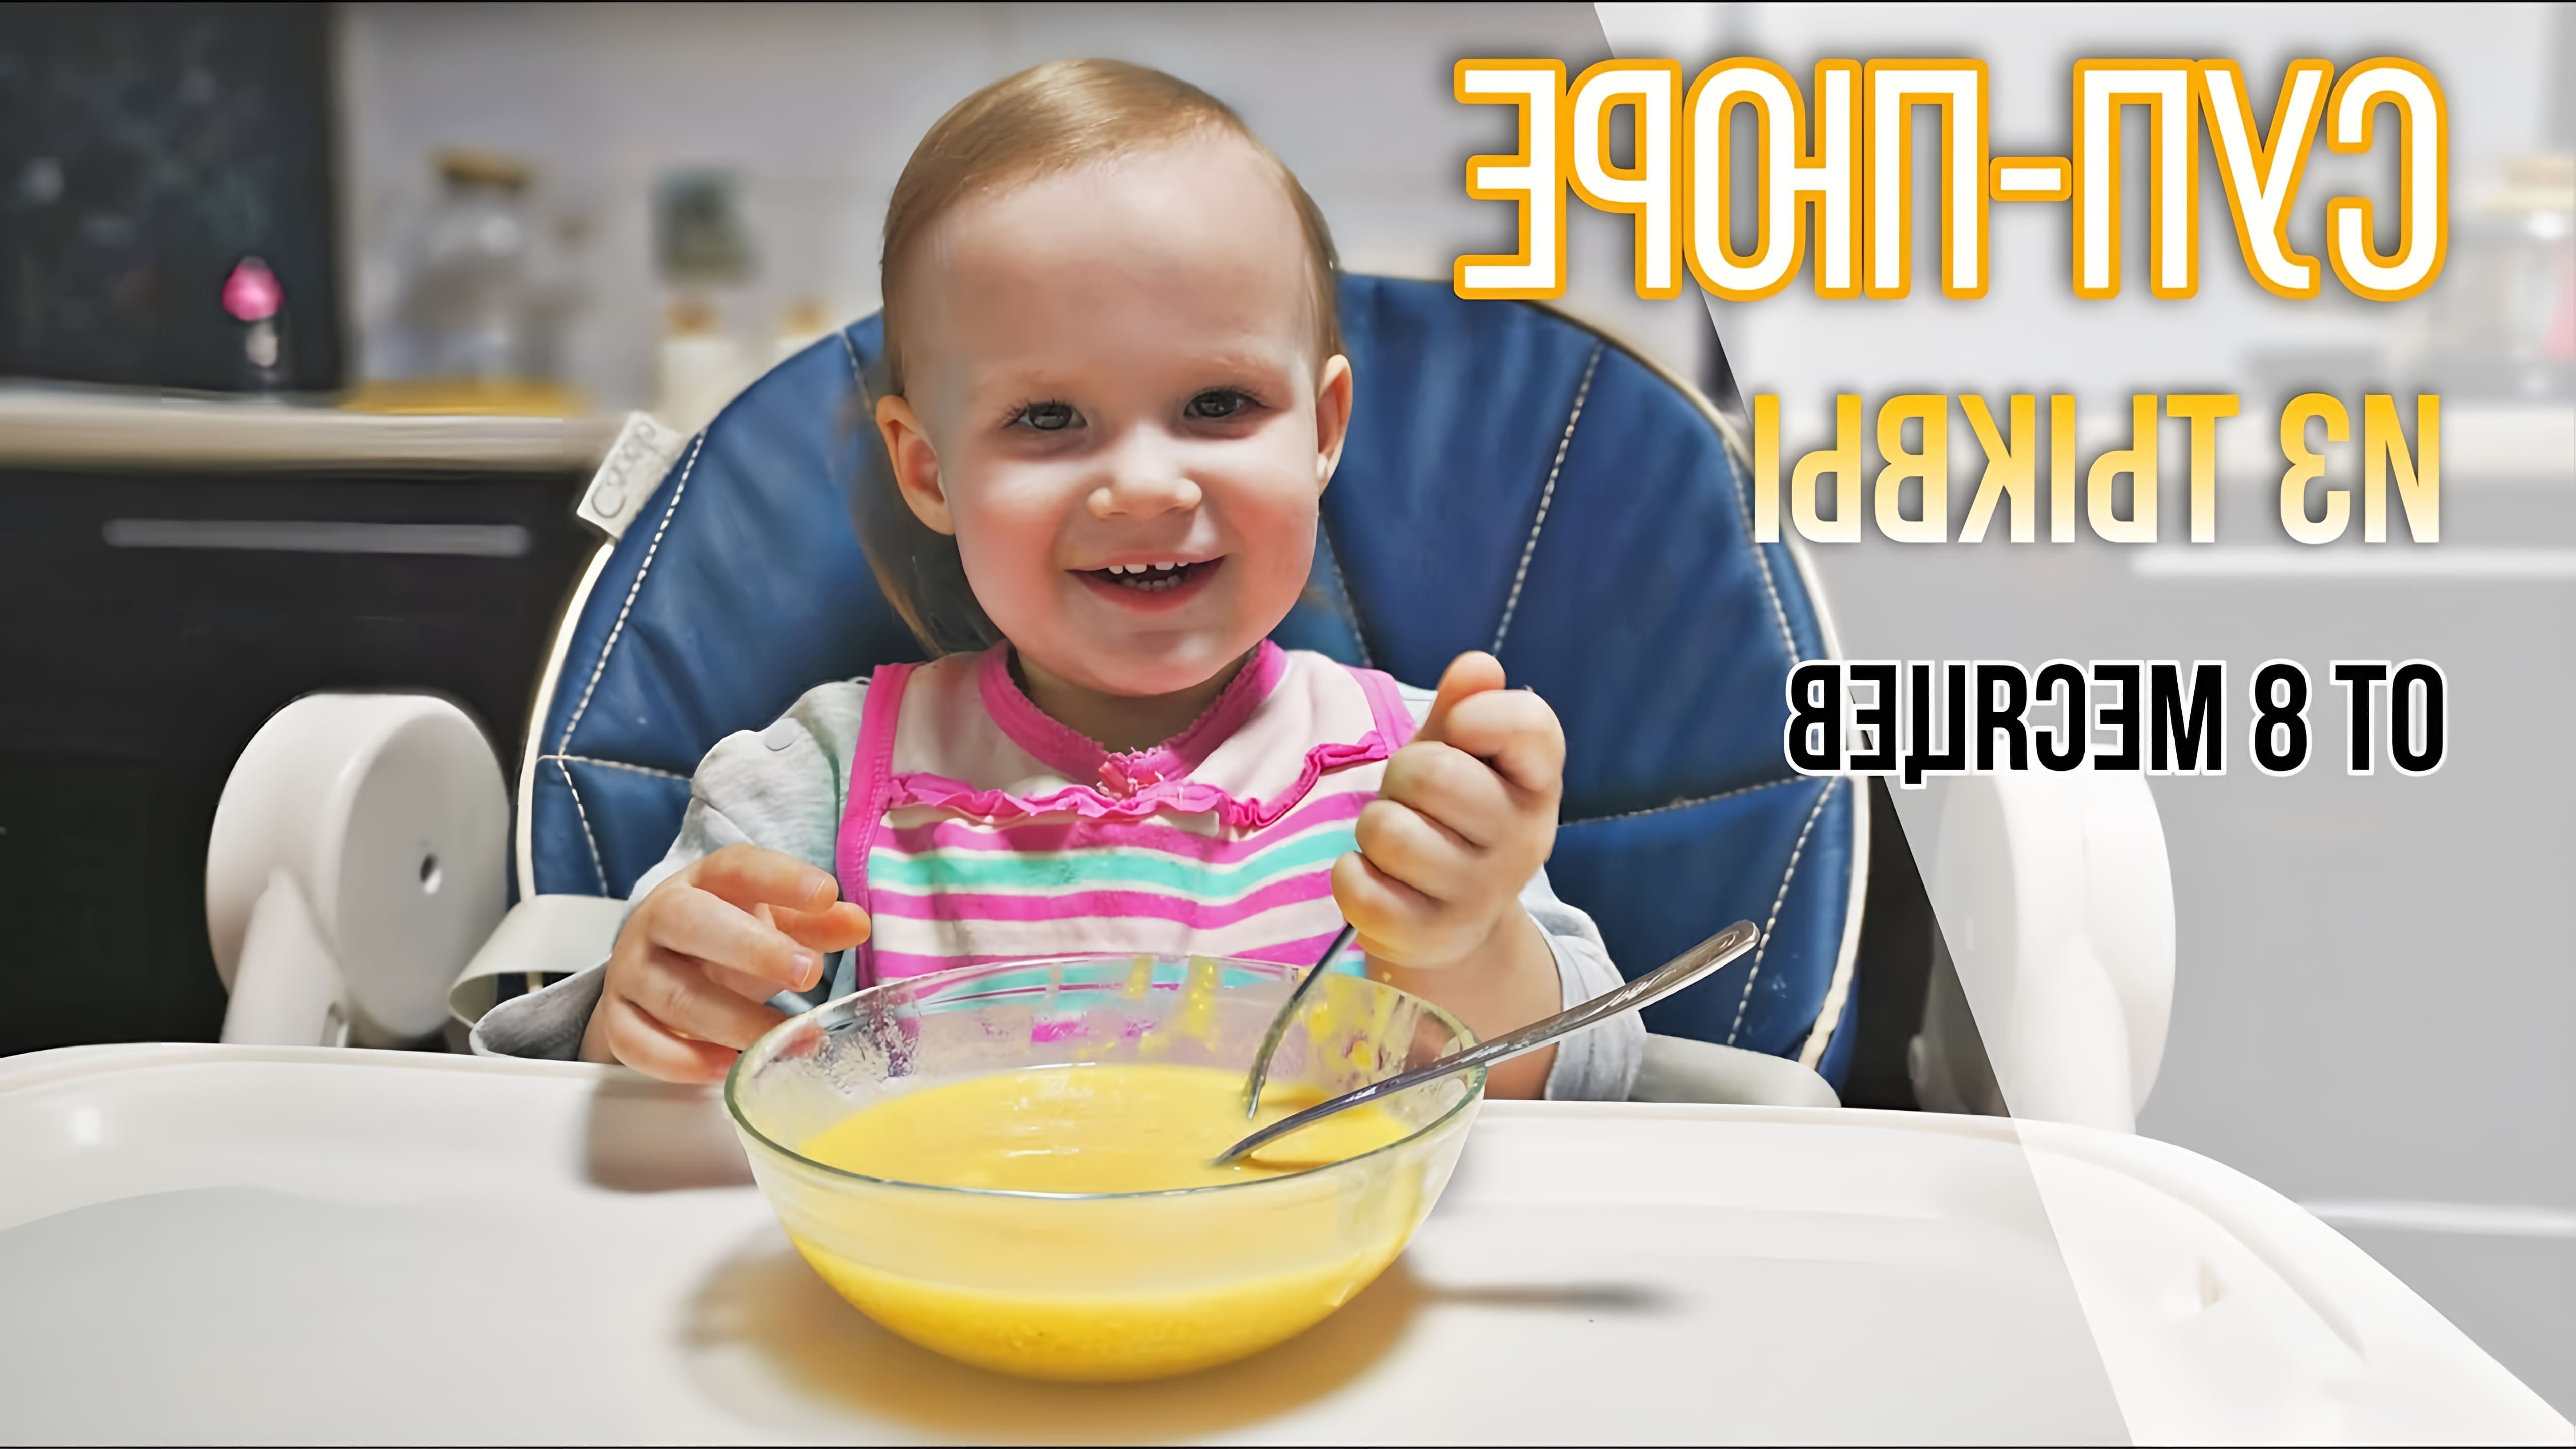 В этом видео демонстрируется процесс приготовления супа-пюре из тыквы для детей от 8 месяцев